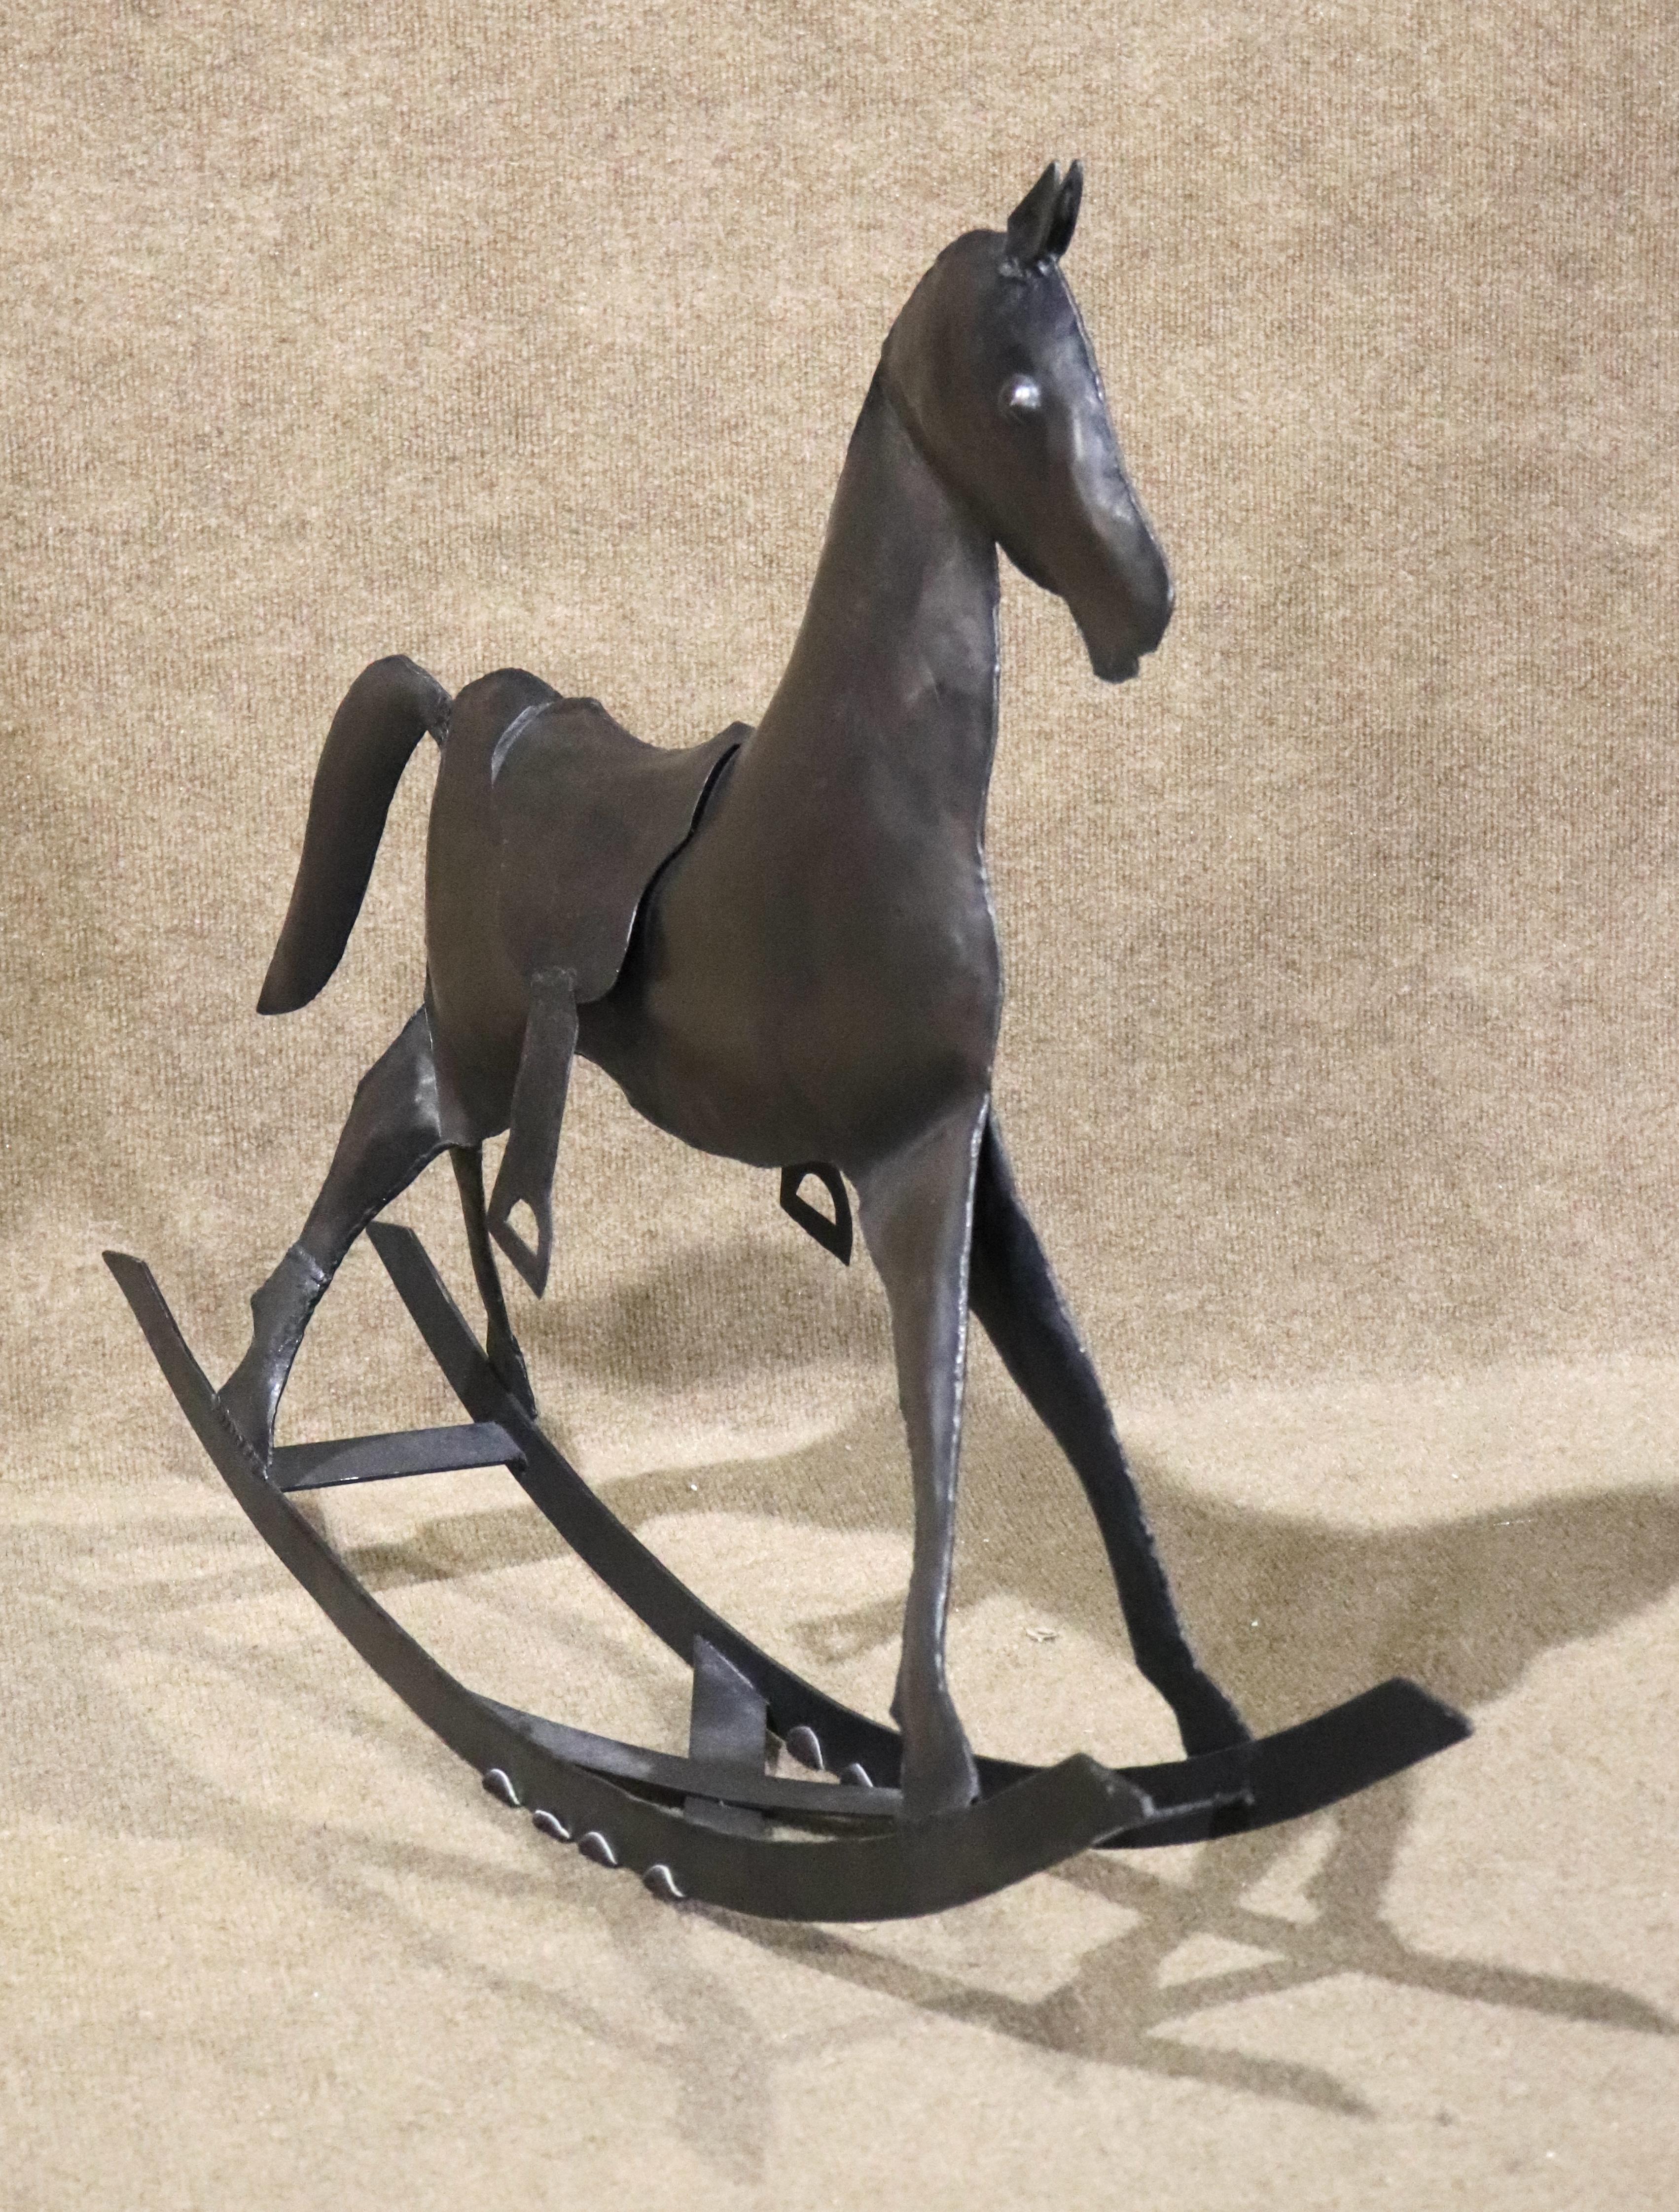 Cet amusant cheval à bascule fait à la main est entièrement constitué de feuilles de métal, soudées pour créer un cheval d'enfant.
Veuillez confirmer le lieu NY ou NJ